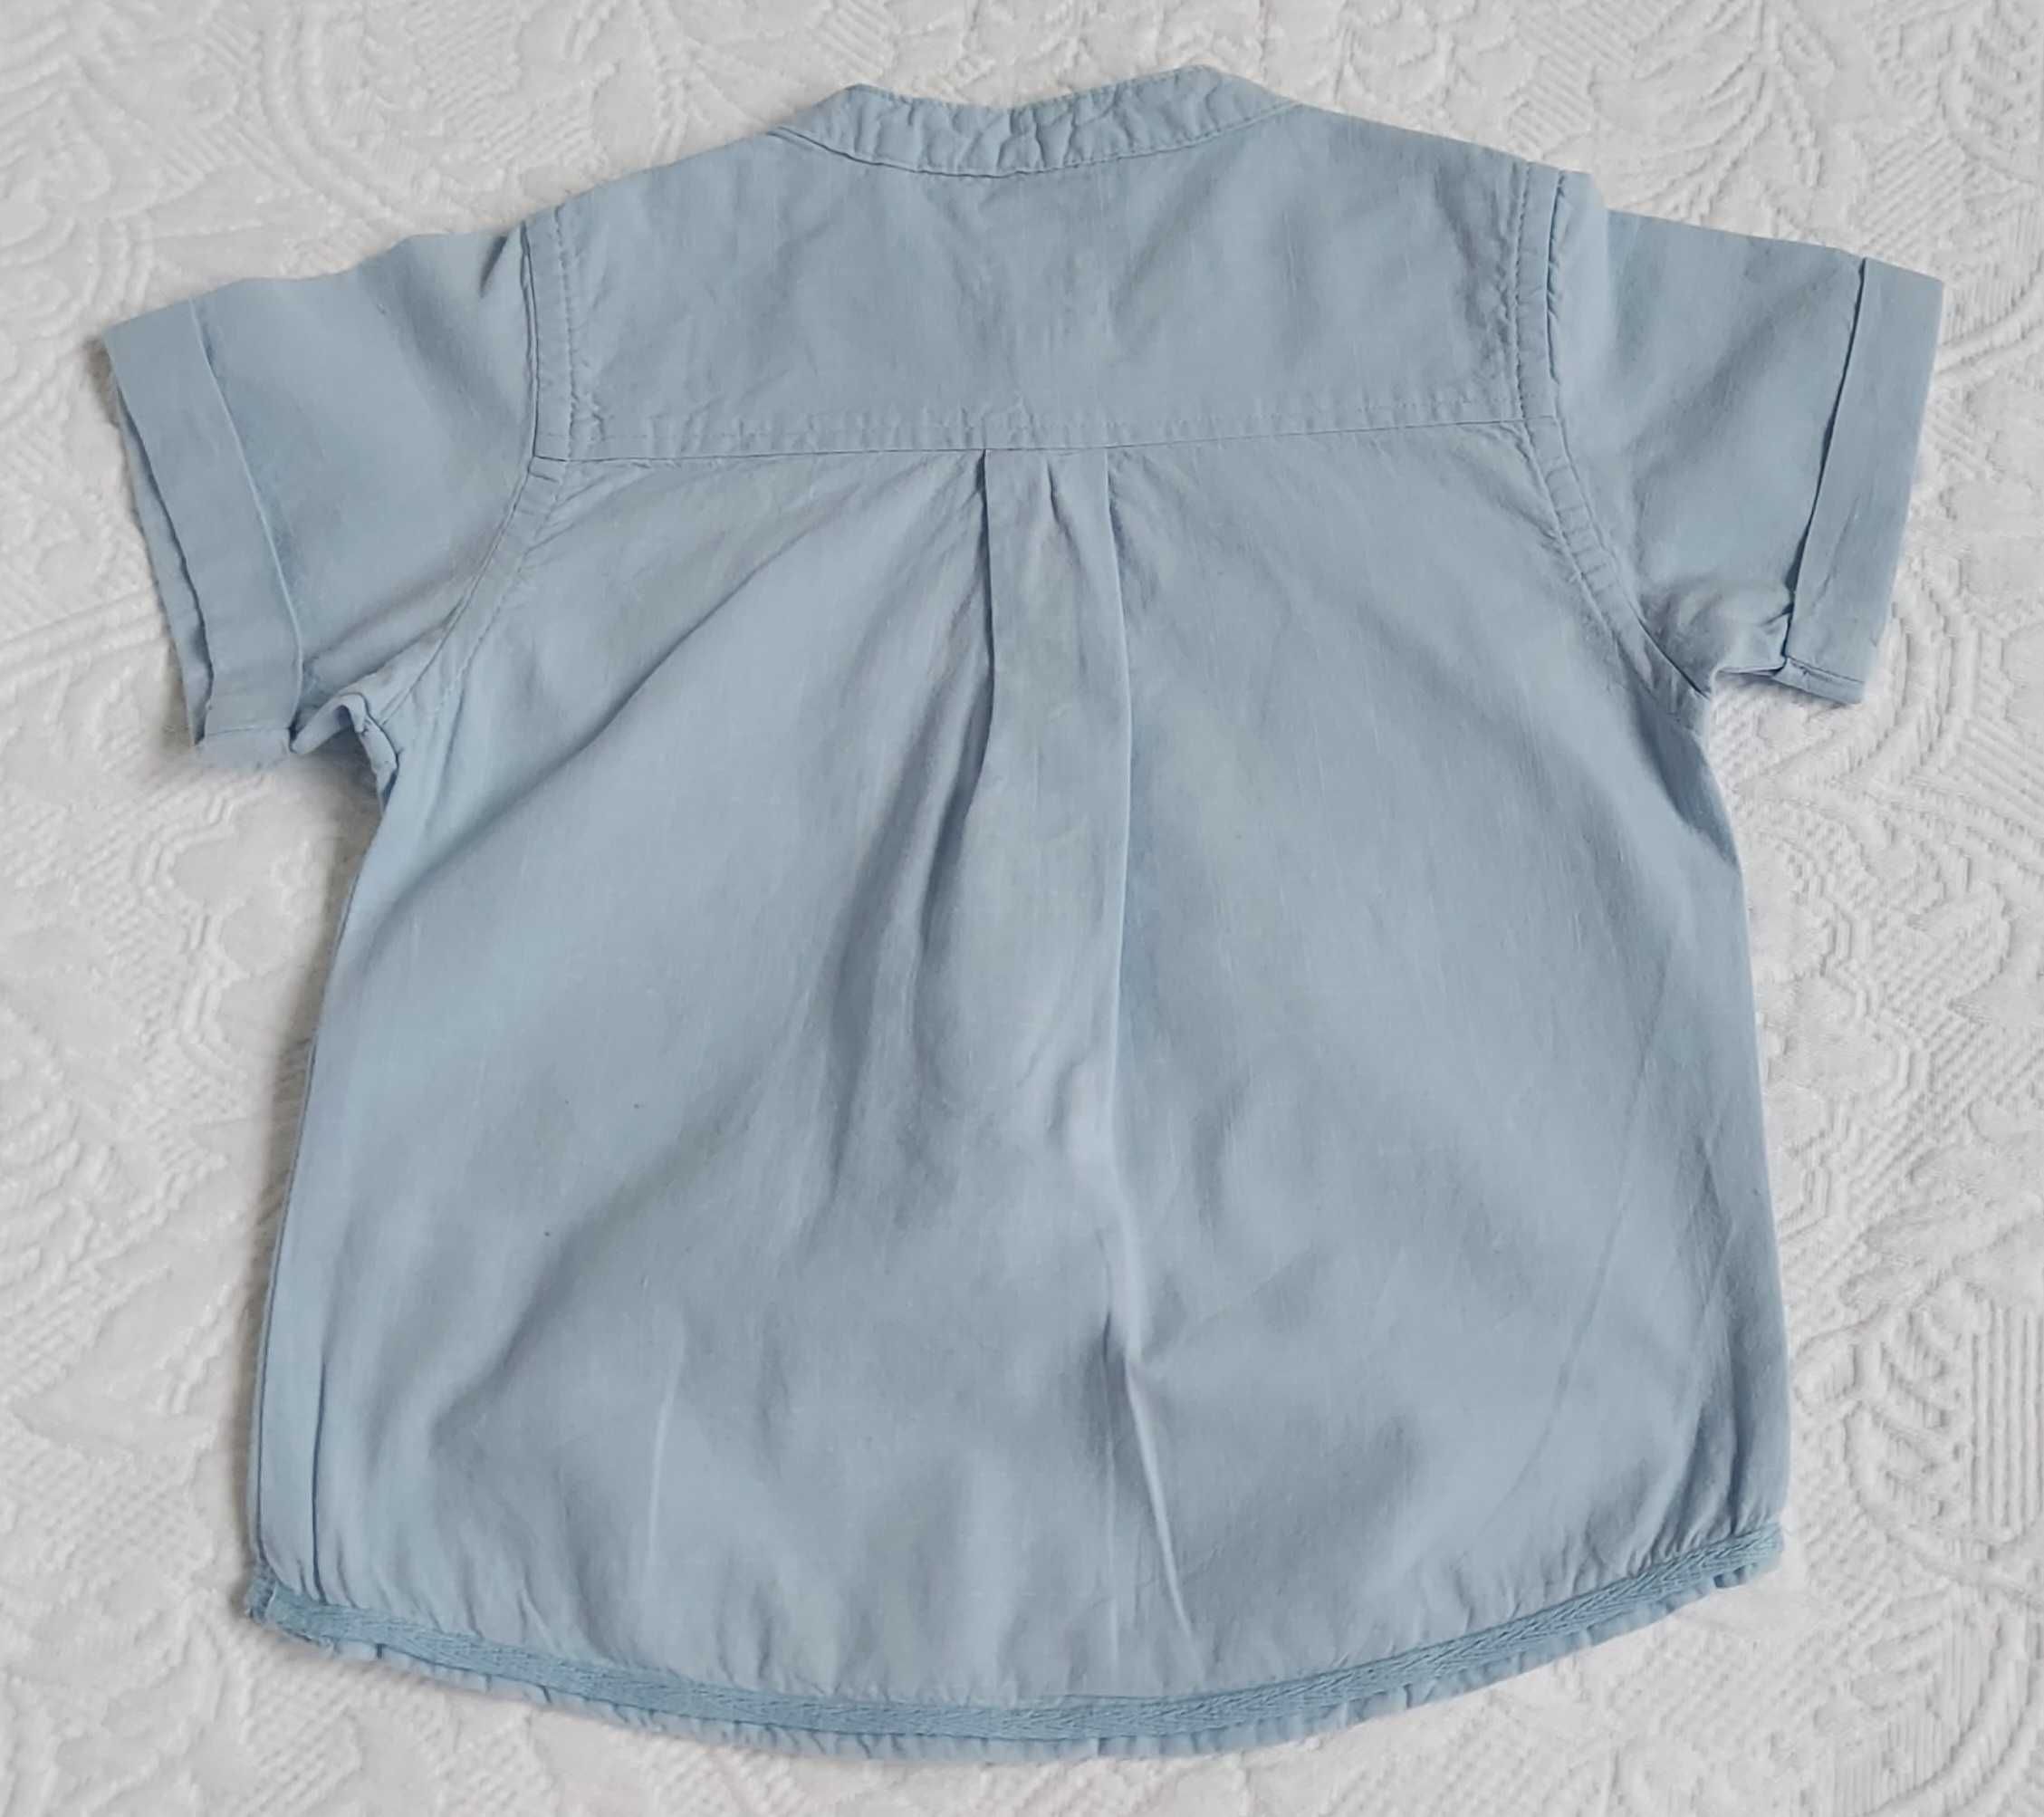 Śliczna błękitna koszula chłopięca niemowlęca Cool Club rozm. 80